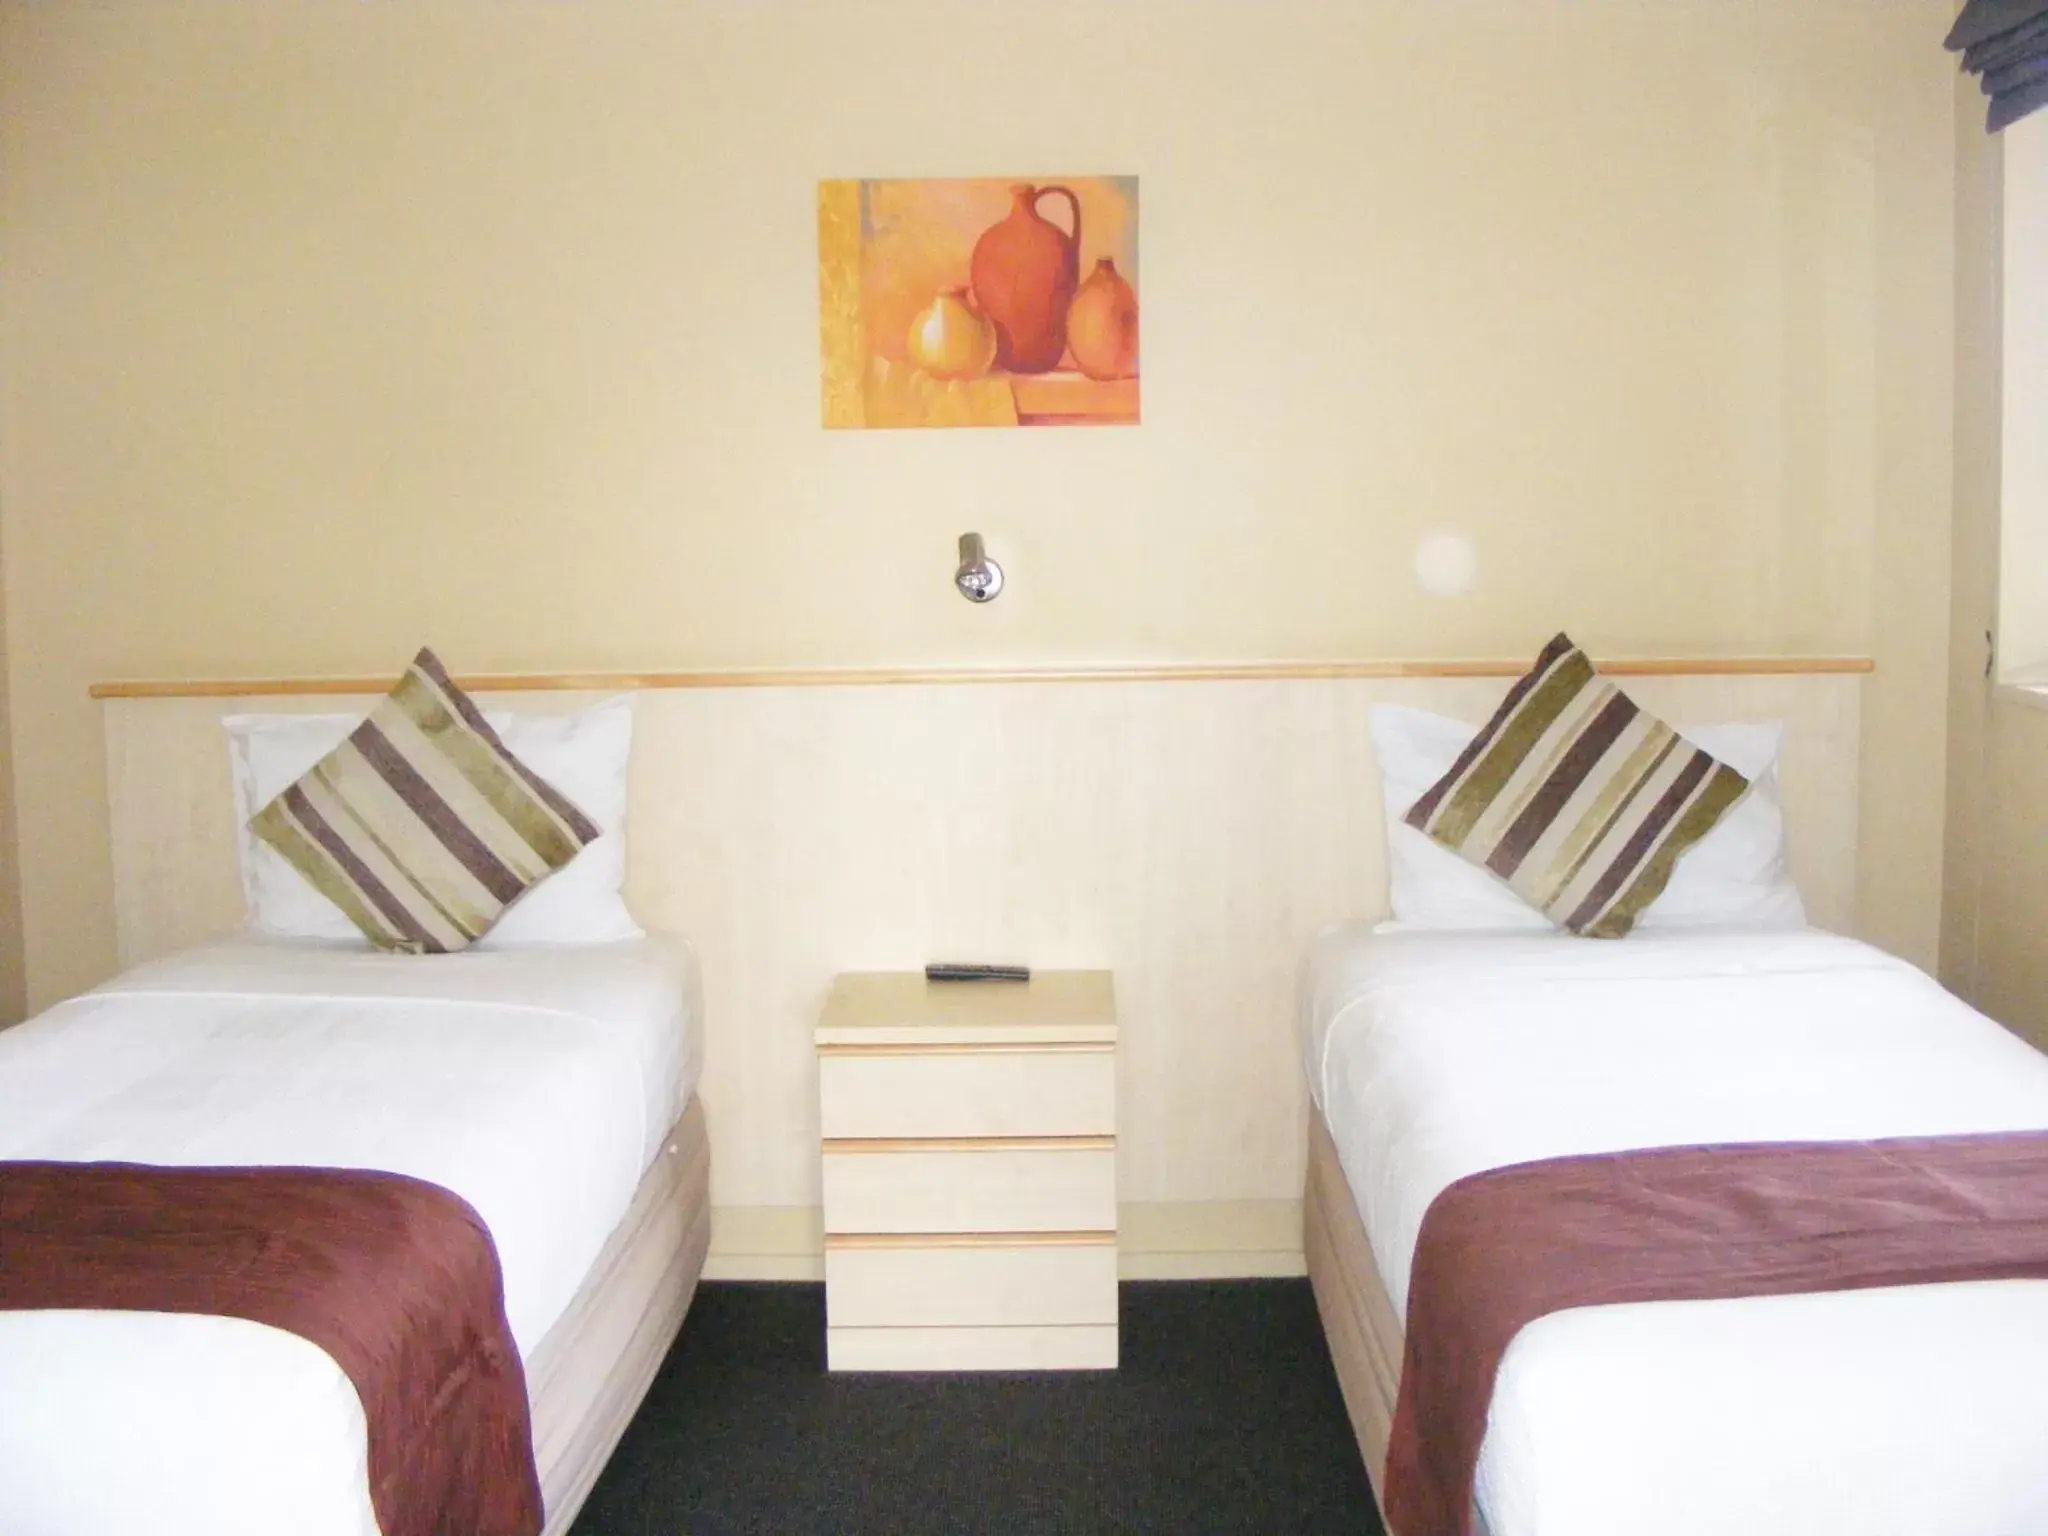 Bedroom, Room Photo in Blenheim Spa Motor Lodge